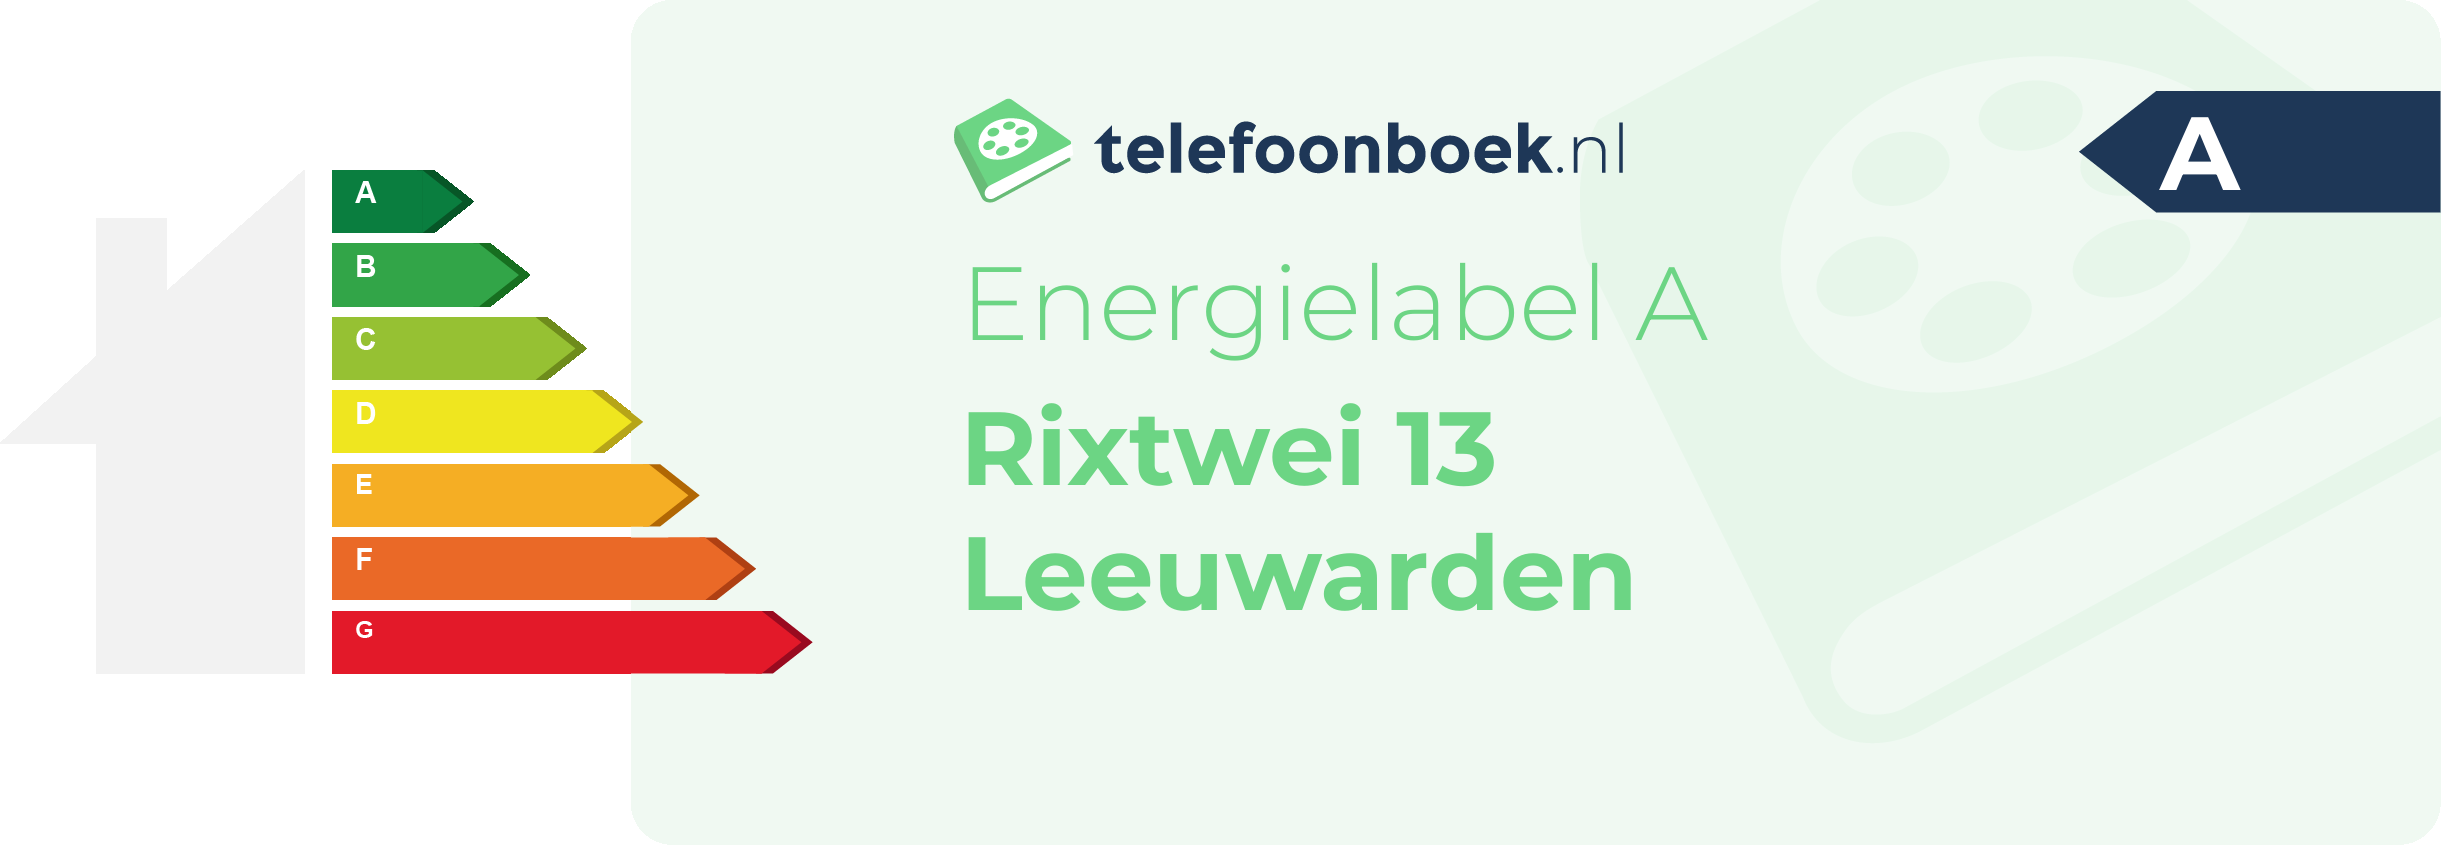 Energielabel Rixtwei 13 Leeuwarden